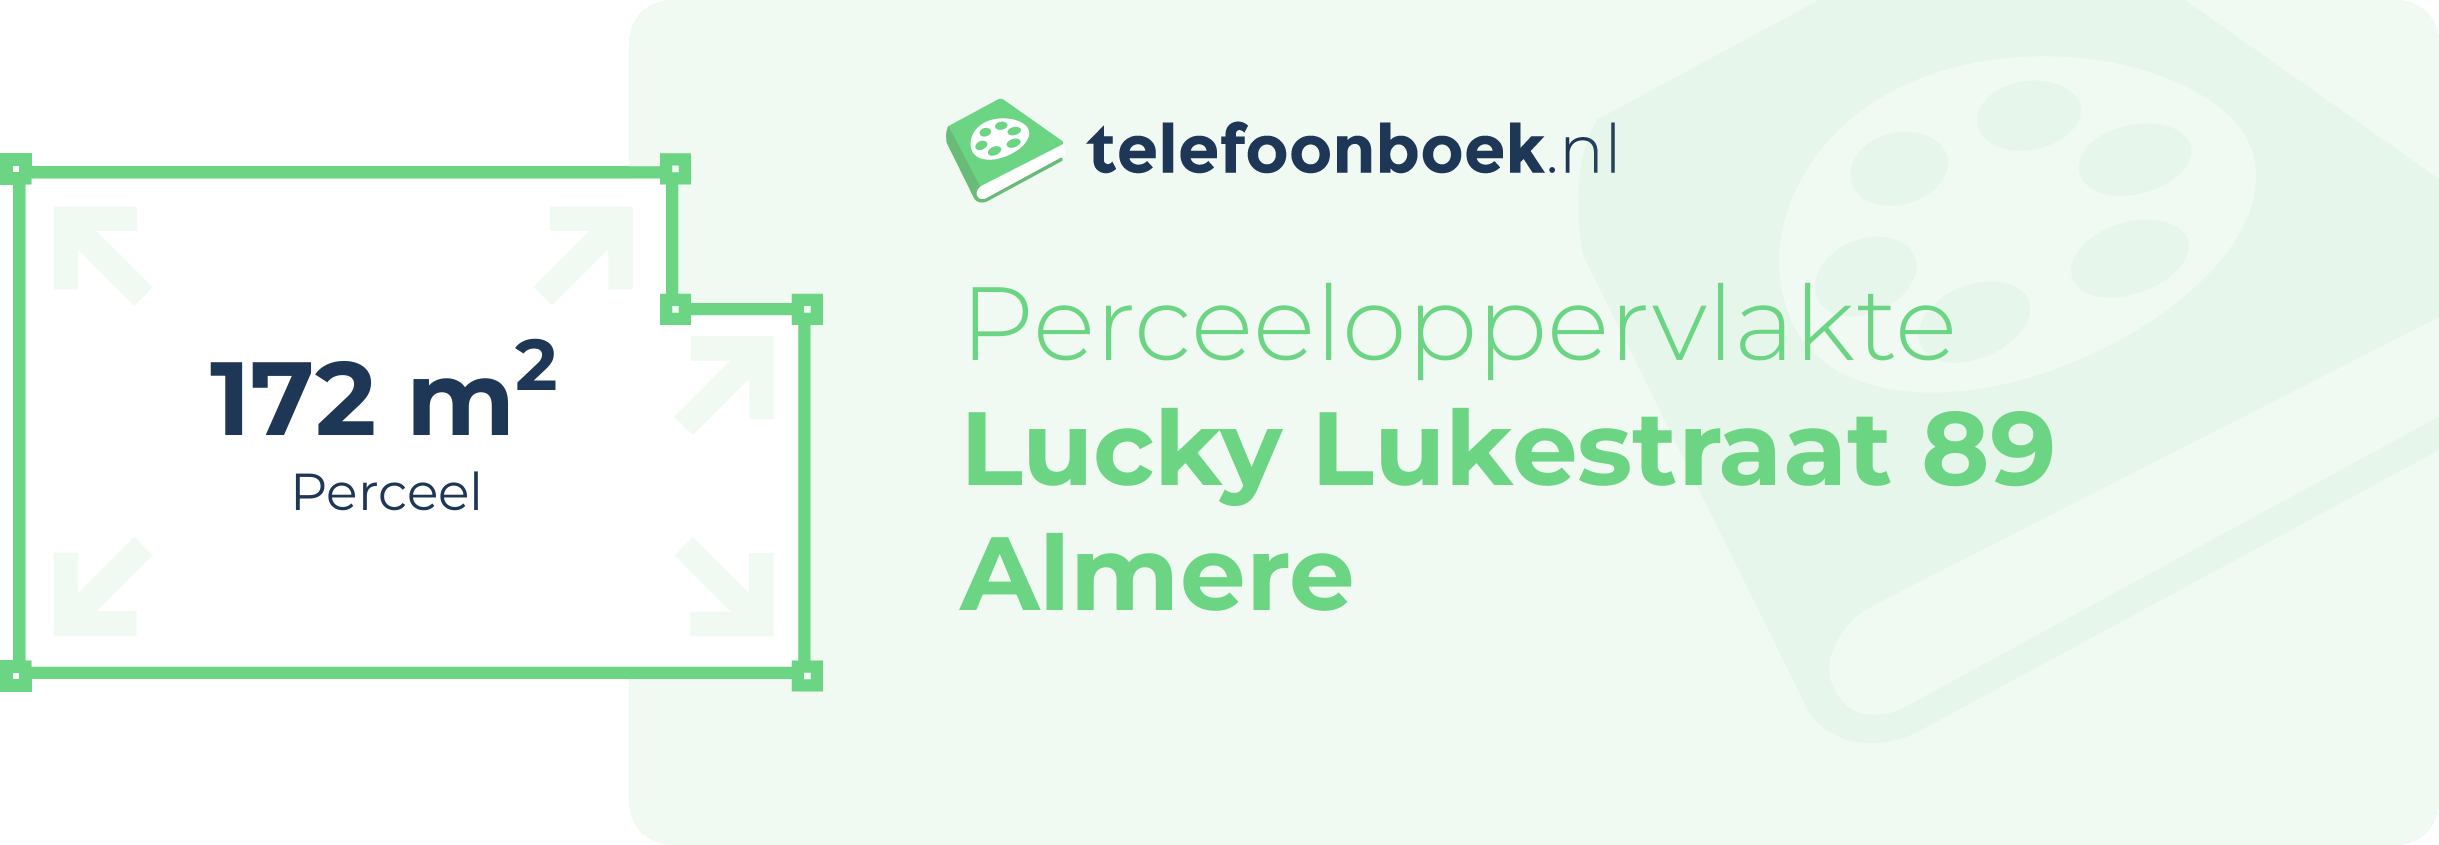 Perceeloppervlakte Lucky Lukestraat 89 Almere